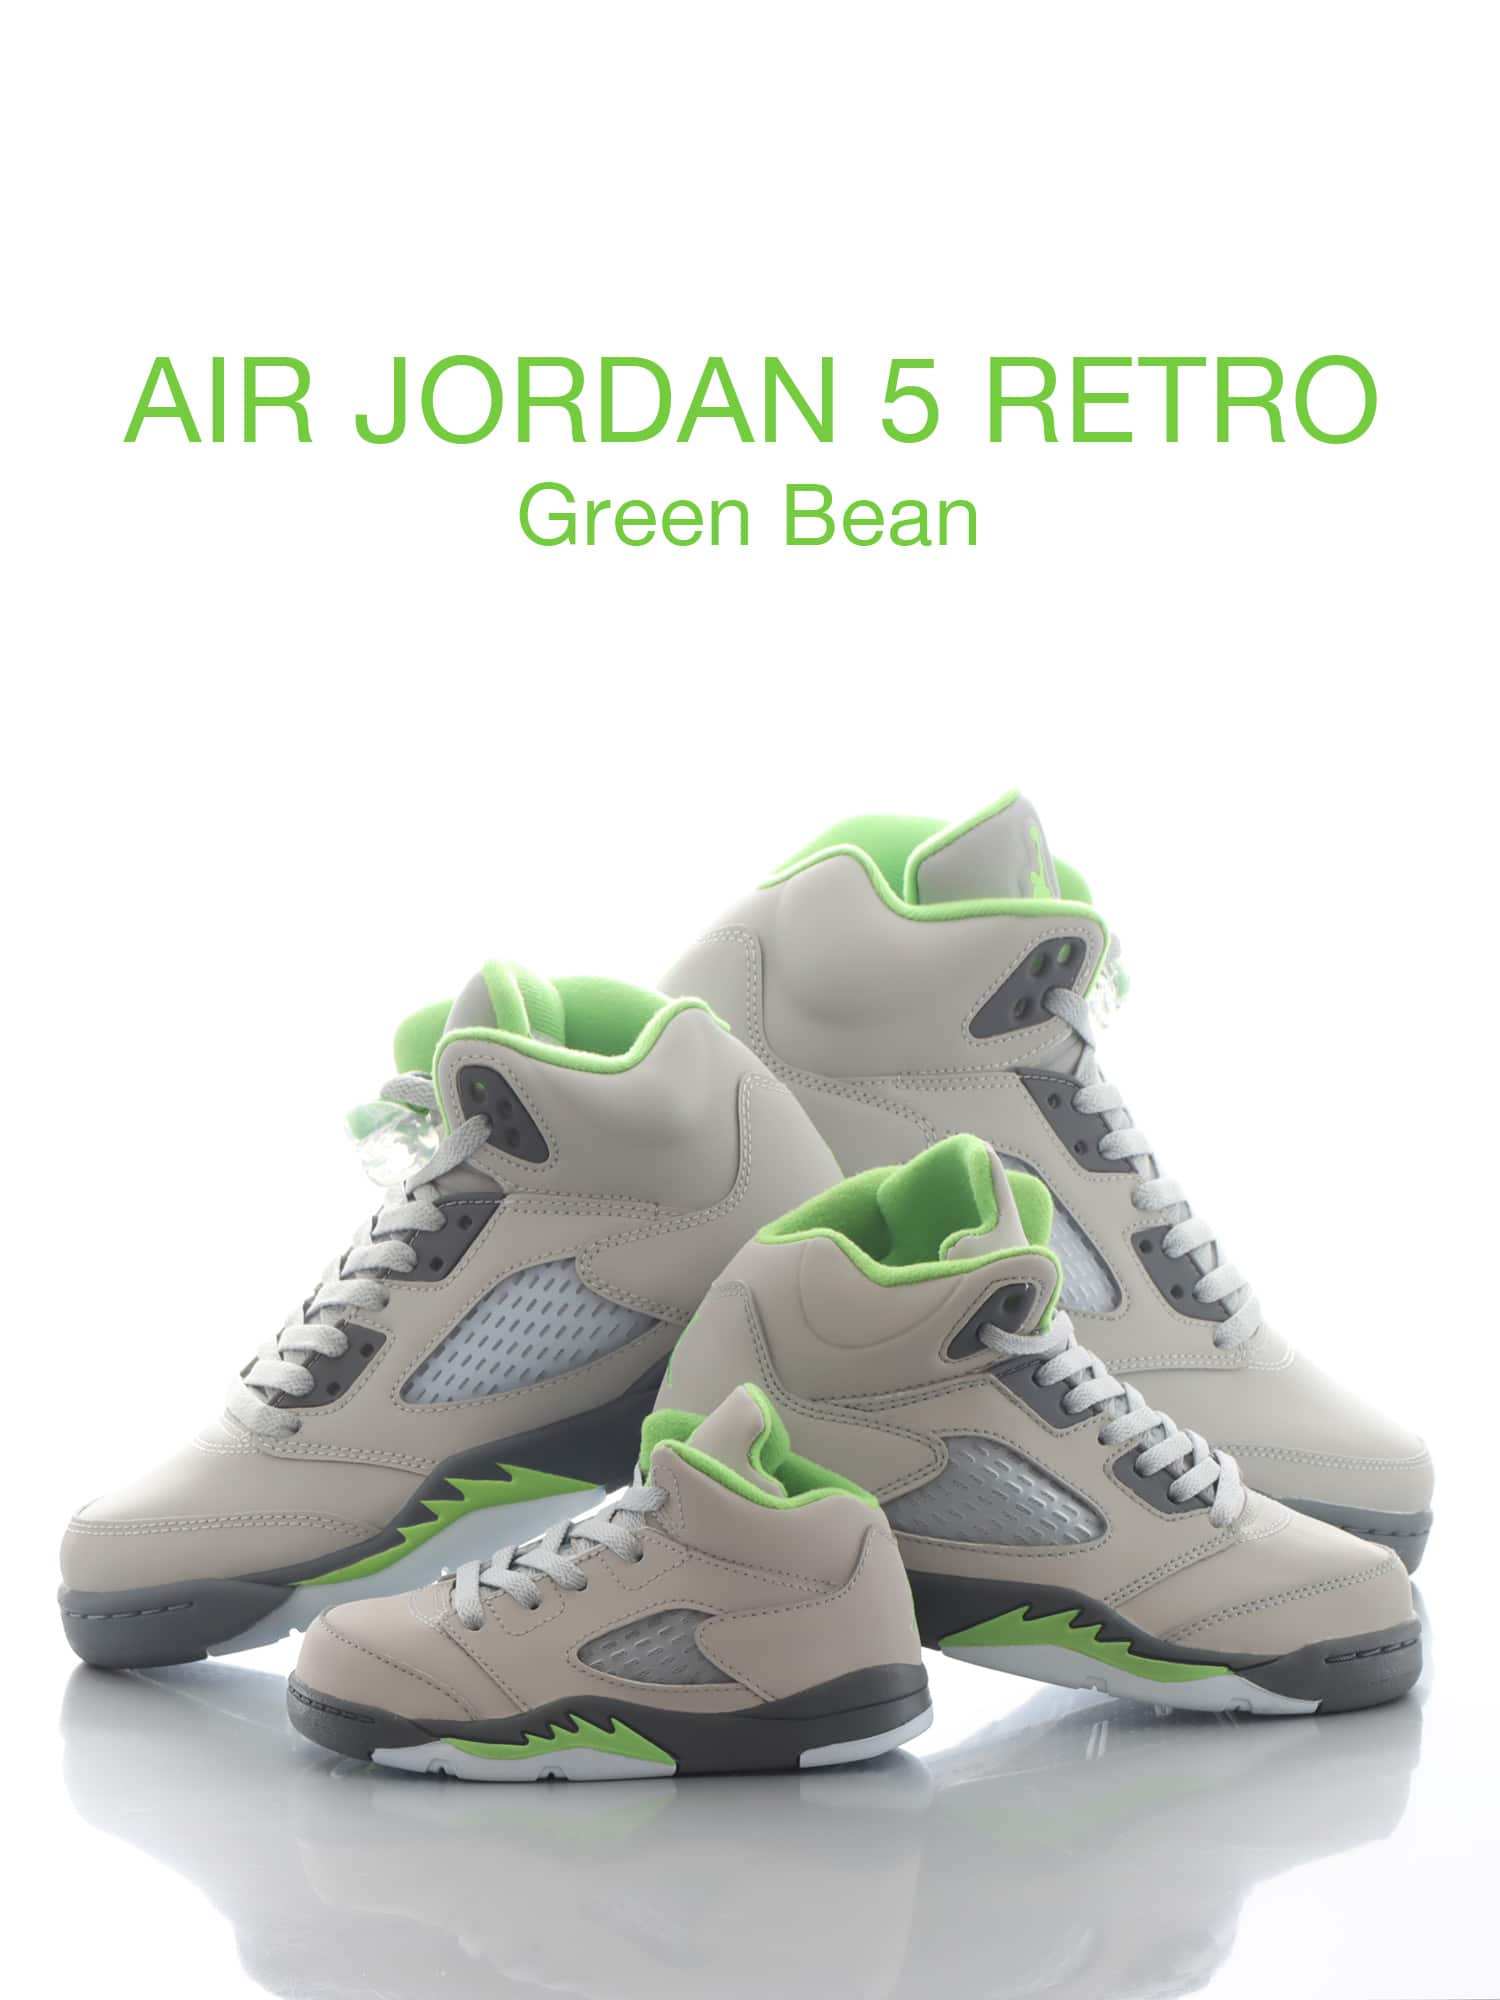 AIR JORDAN 5 RETRO GREEN BEAN